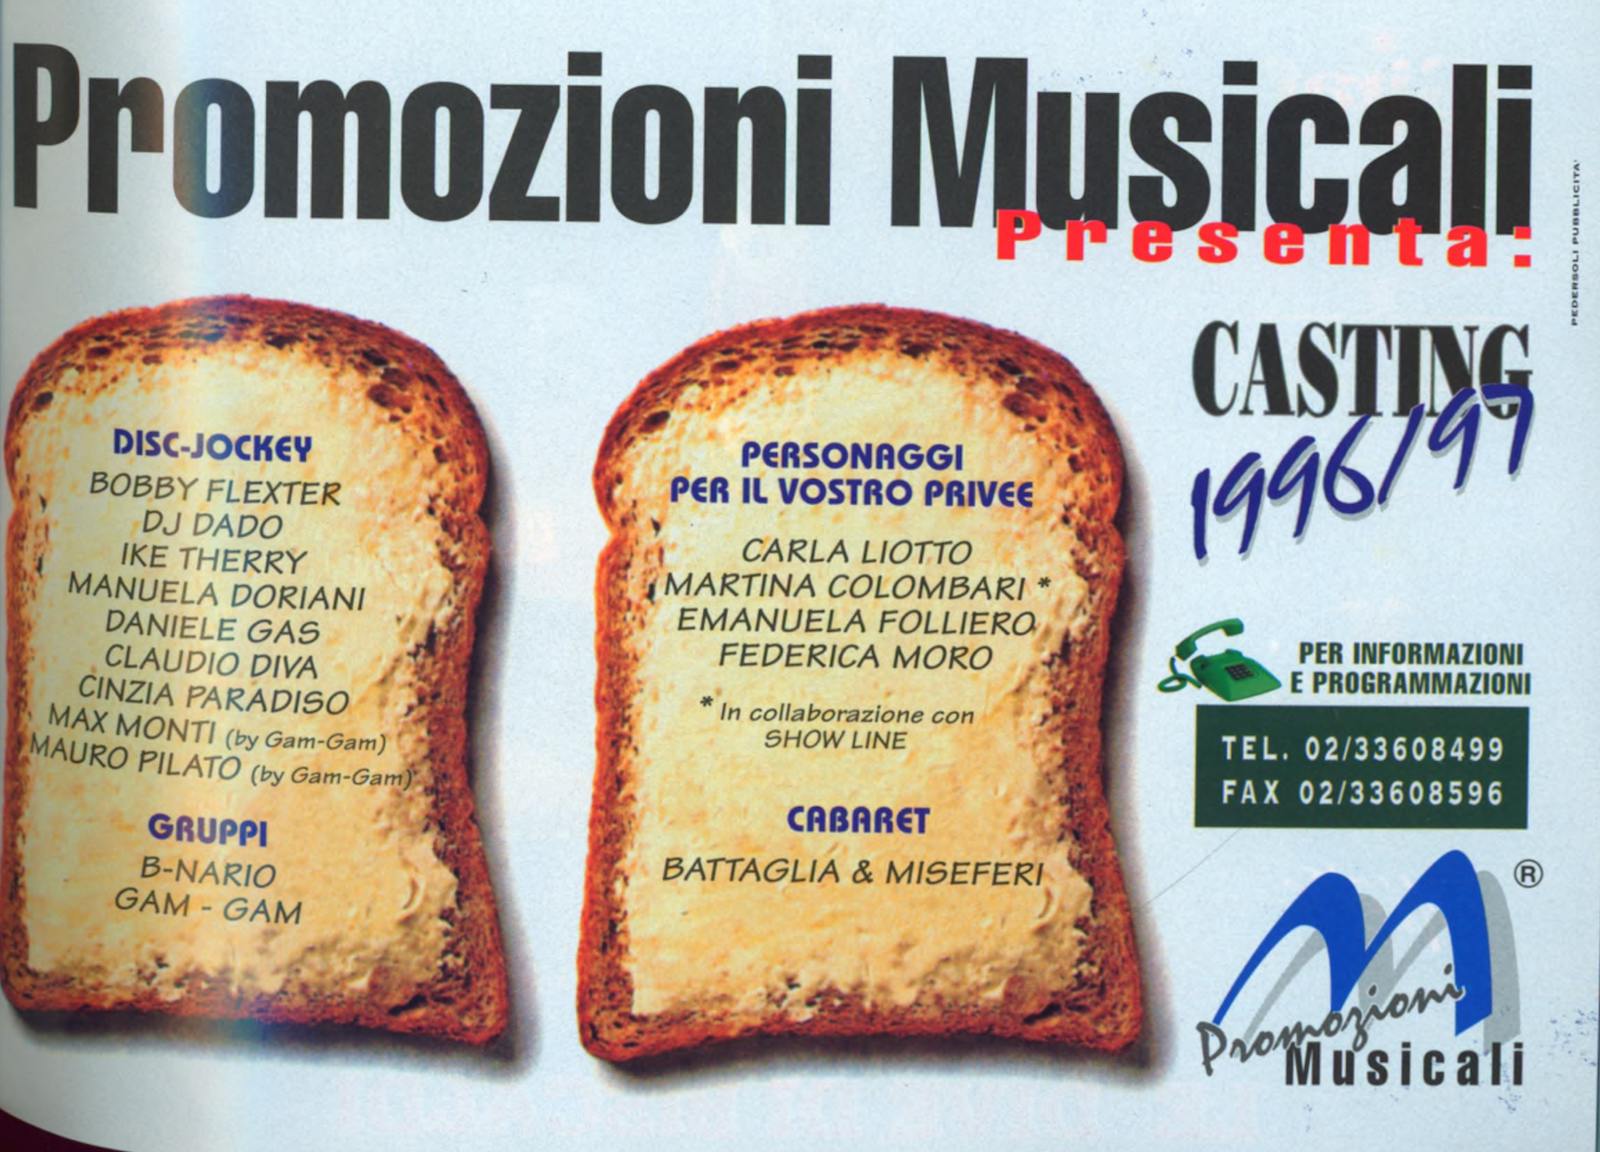 Pubblicità Promozioni Musicali: Casting 1996/97